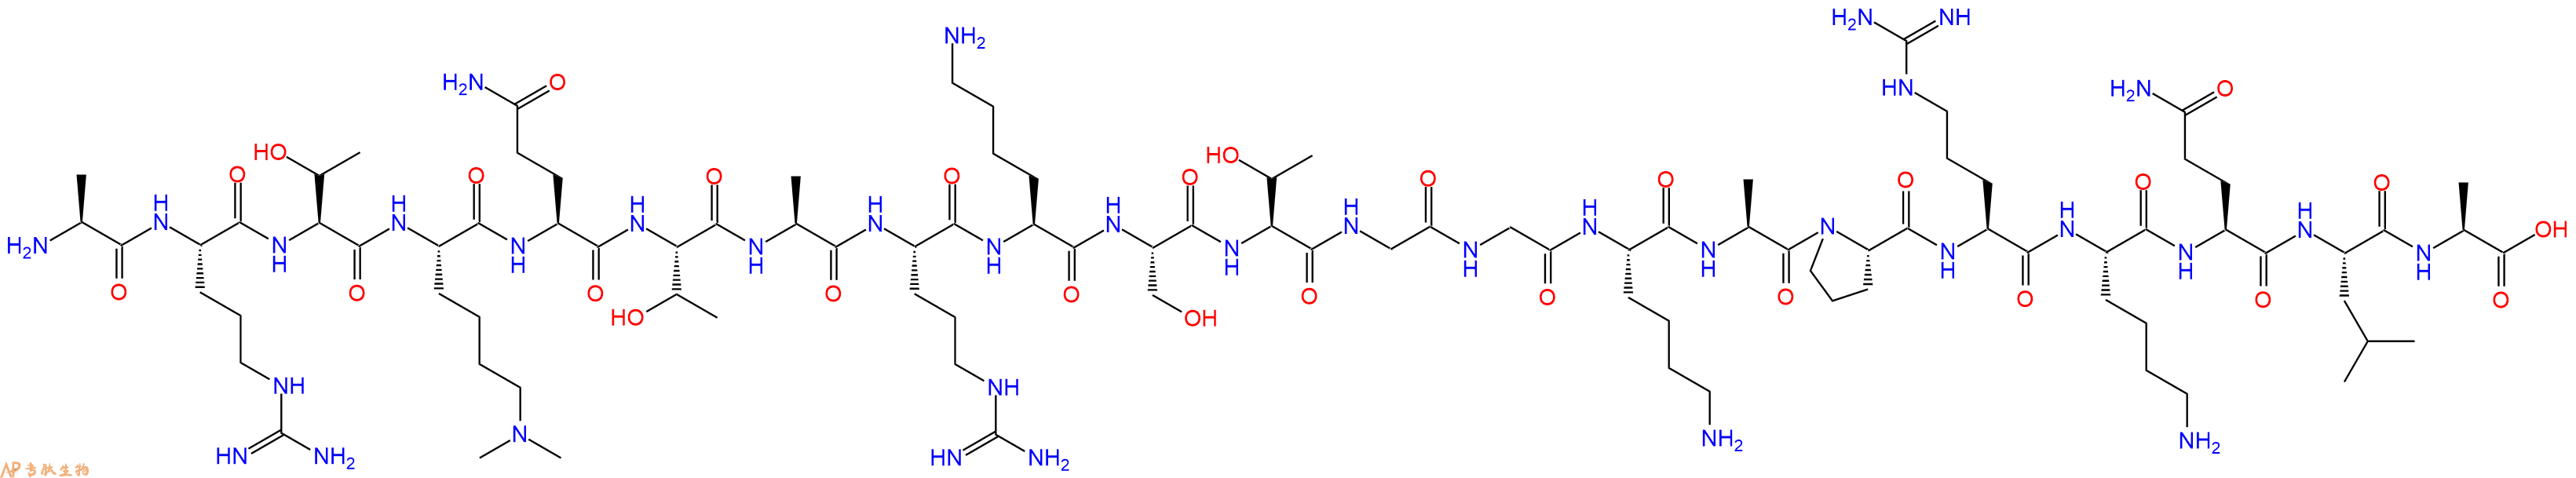 专肽生物产品组蛋白肽段[Lys(Me)24]-Histone H3(1-21), H3K4(Me2)873215-01-1